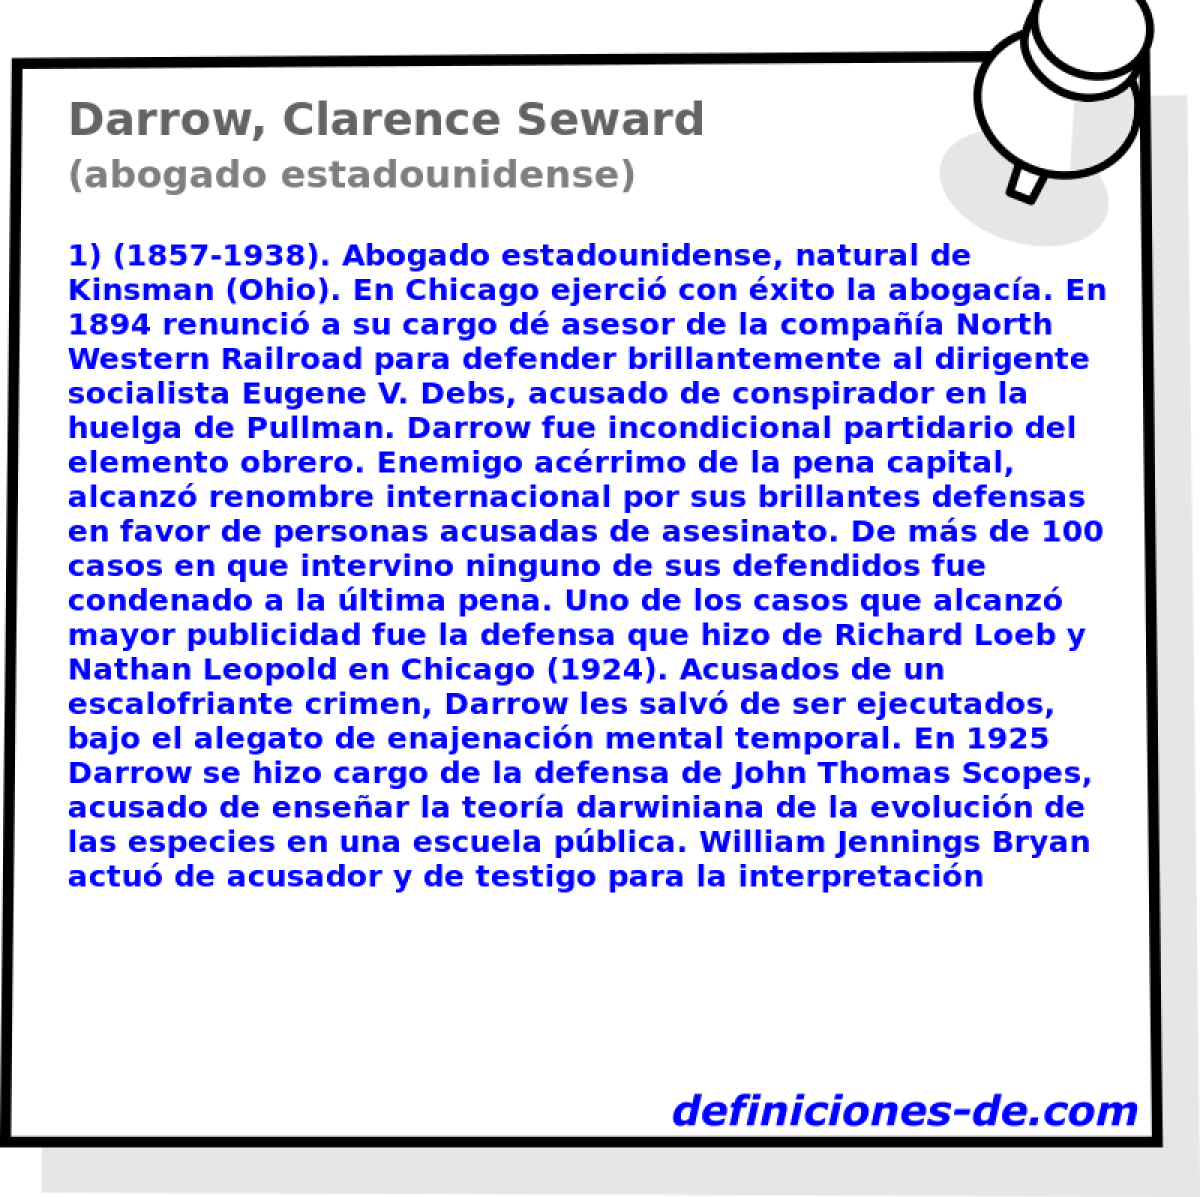 Darrow, Clarence Seward (abogado estadounidense)